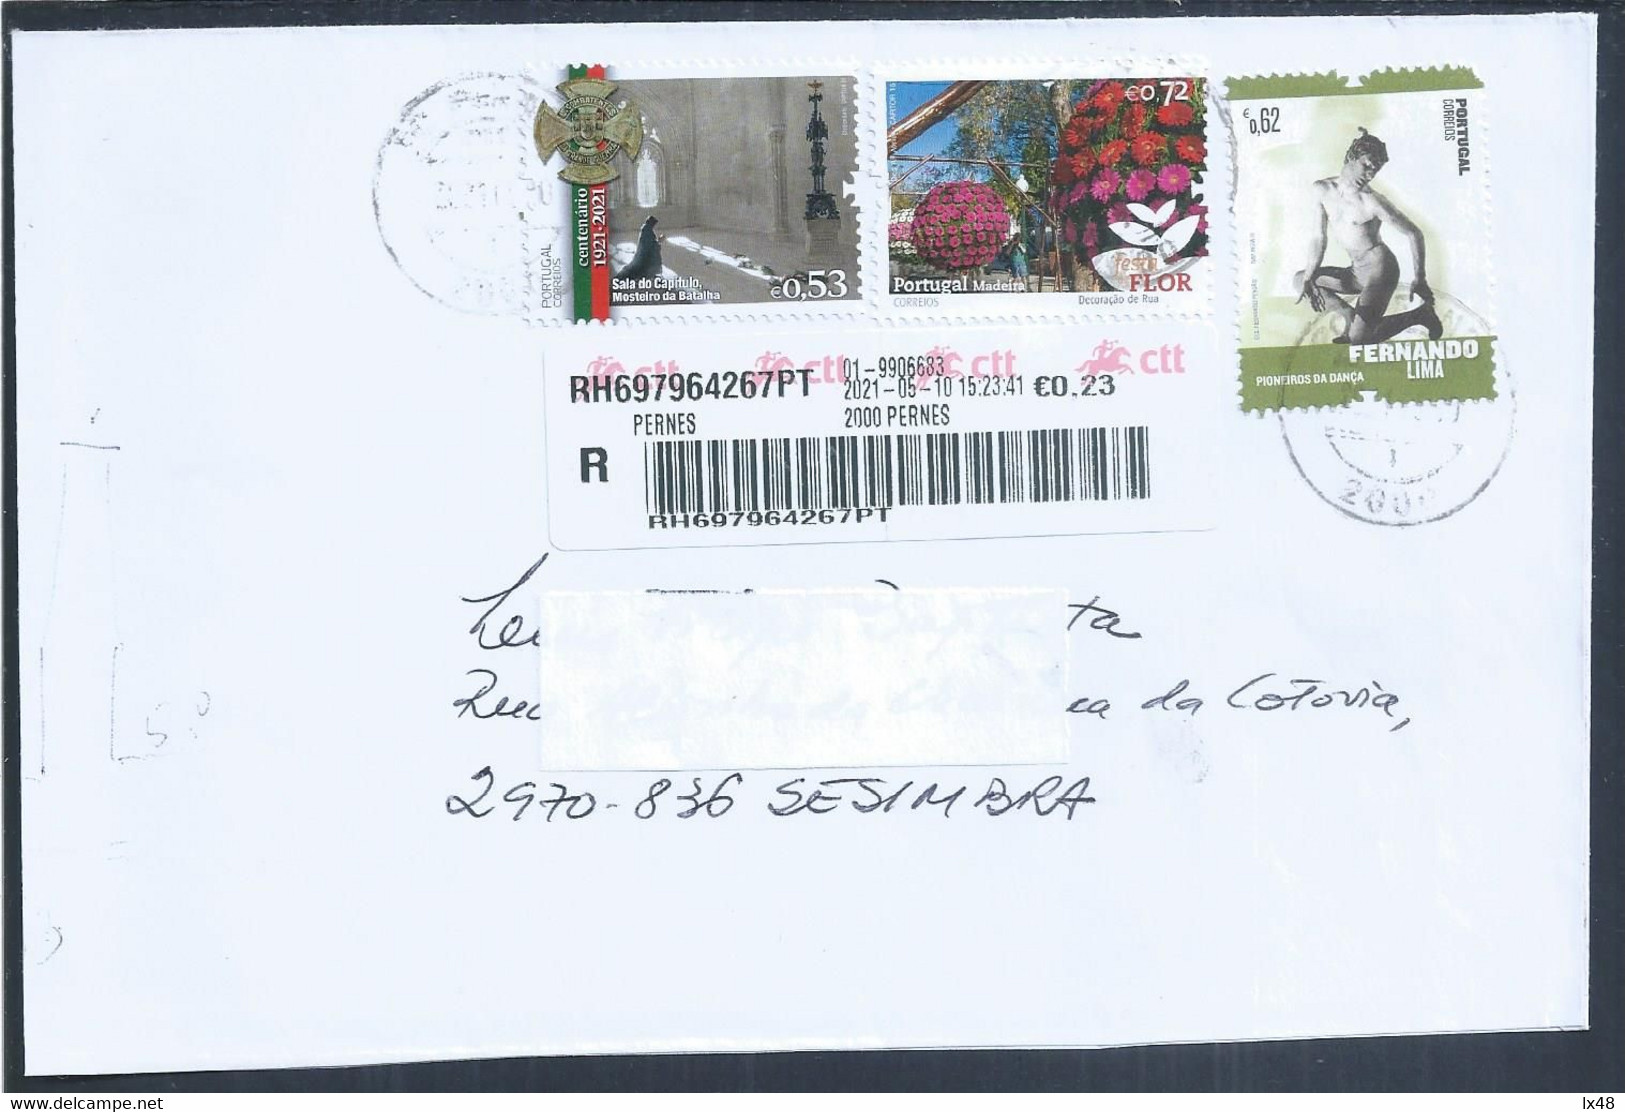 Carta Registada De Pernes, Stamps Mosteiro Da Batalha, Flores Da Madeira E Bailarino Fernando Lima. Dancer. Combatentes - Cartas & Documentos